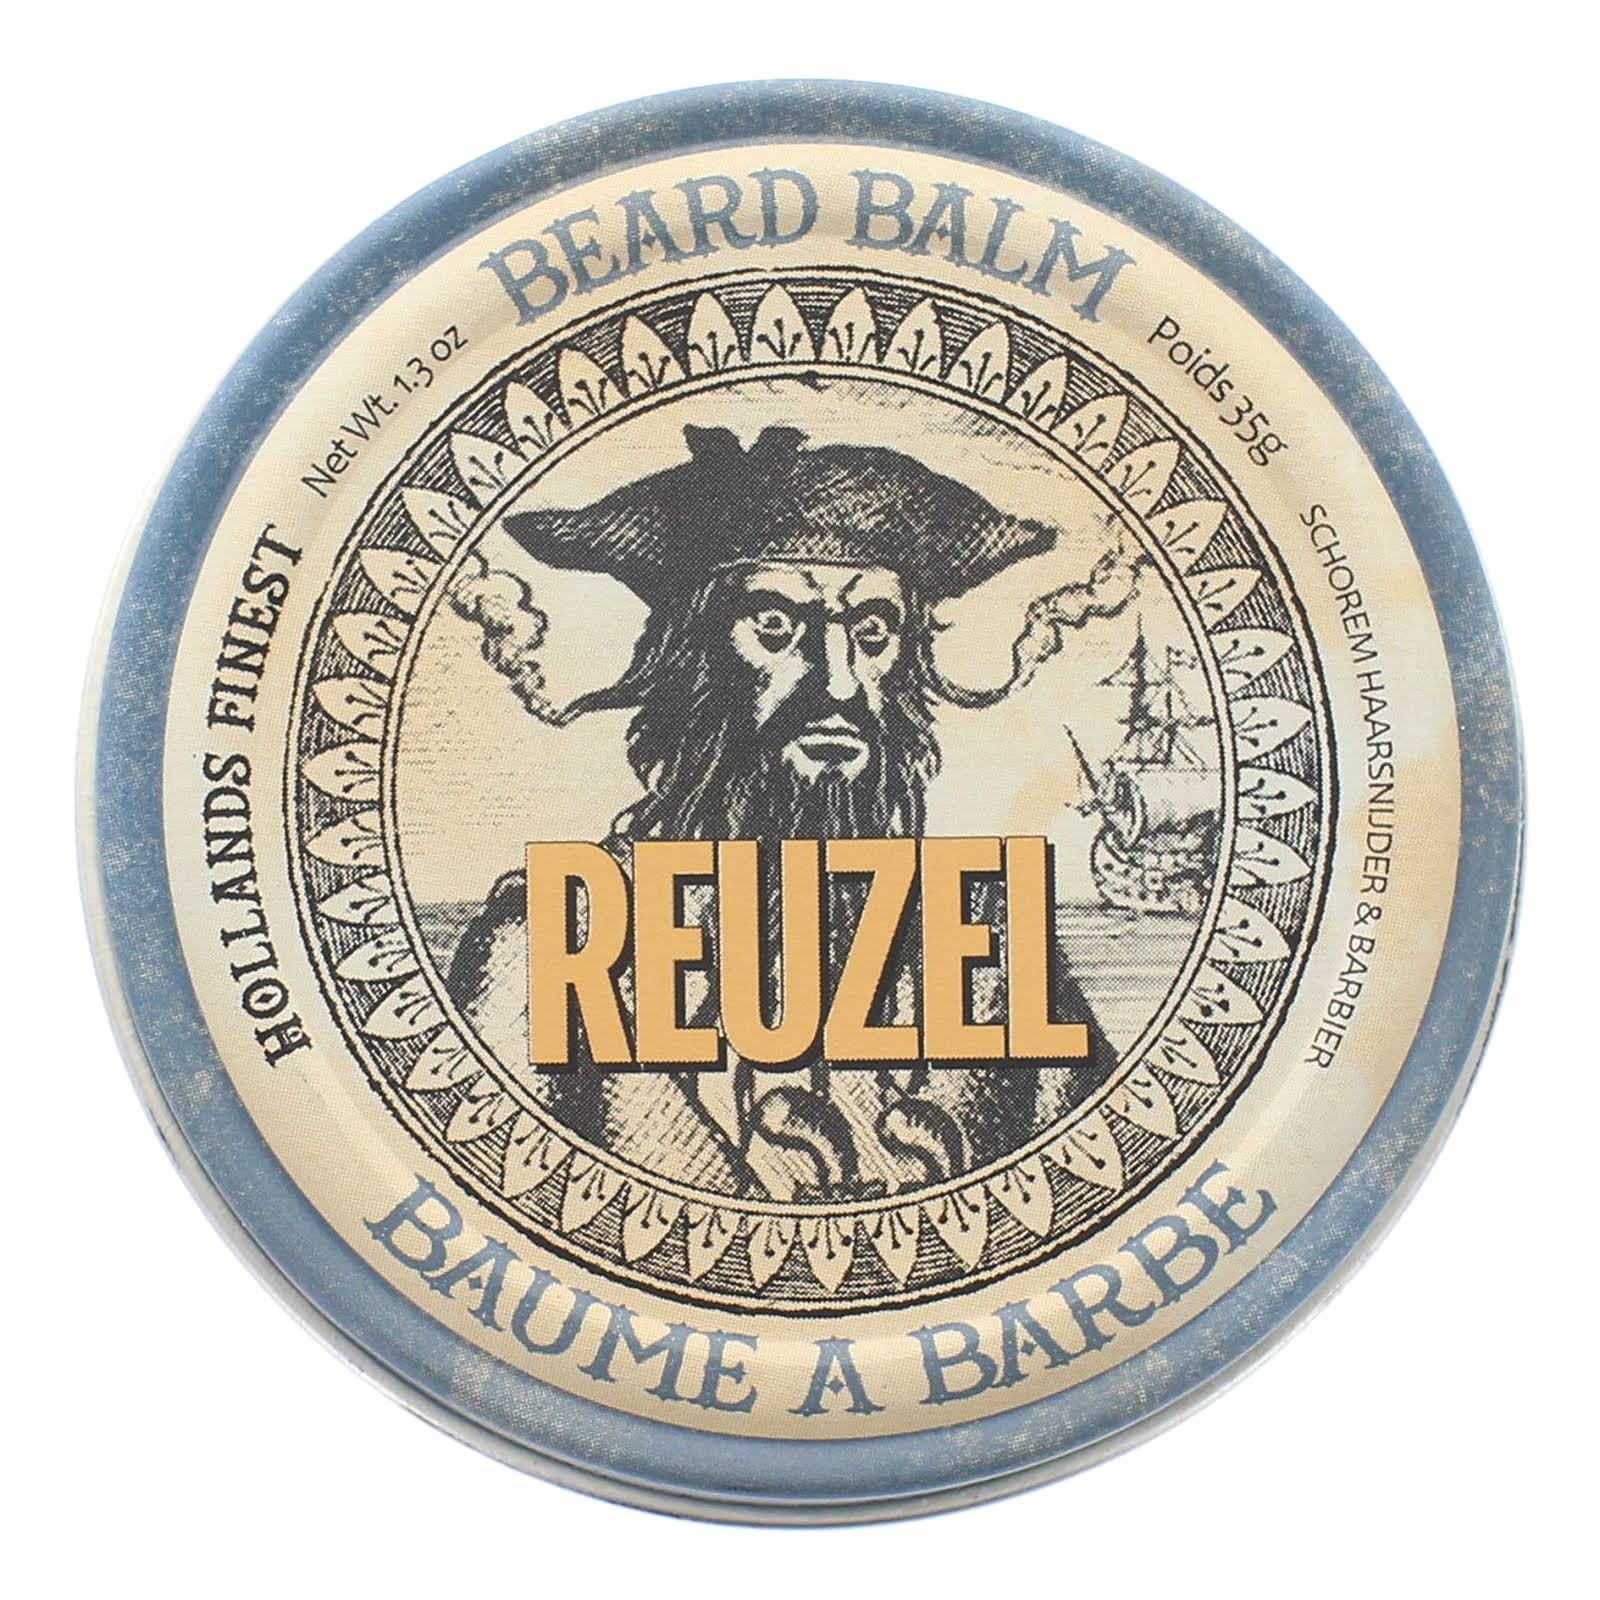 Reuzel Beard Balm - 1.3oz